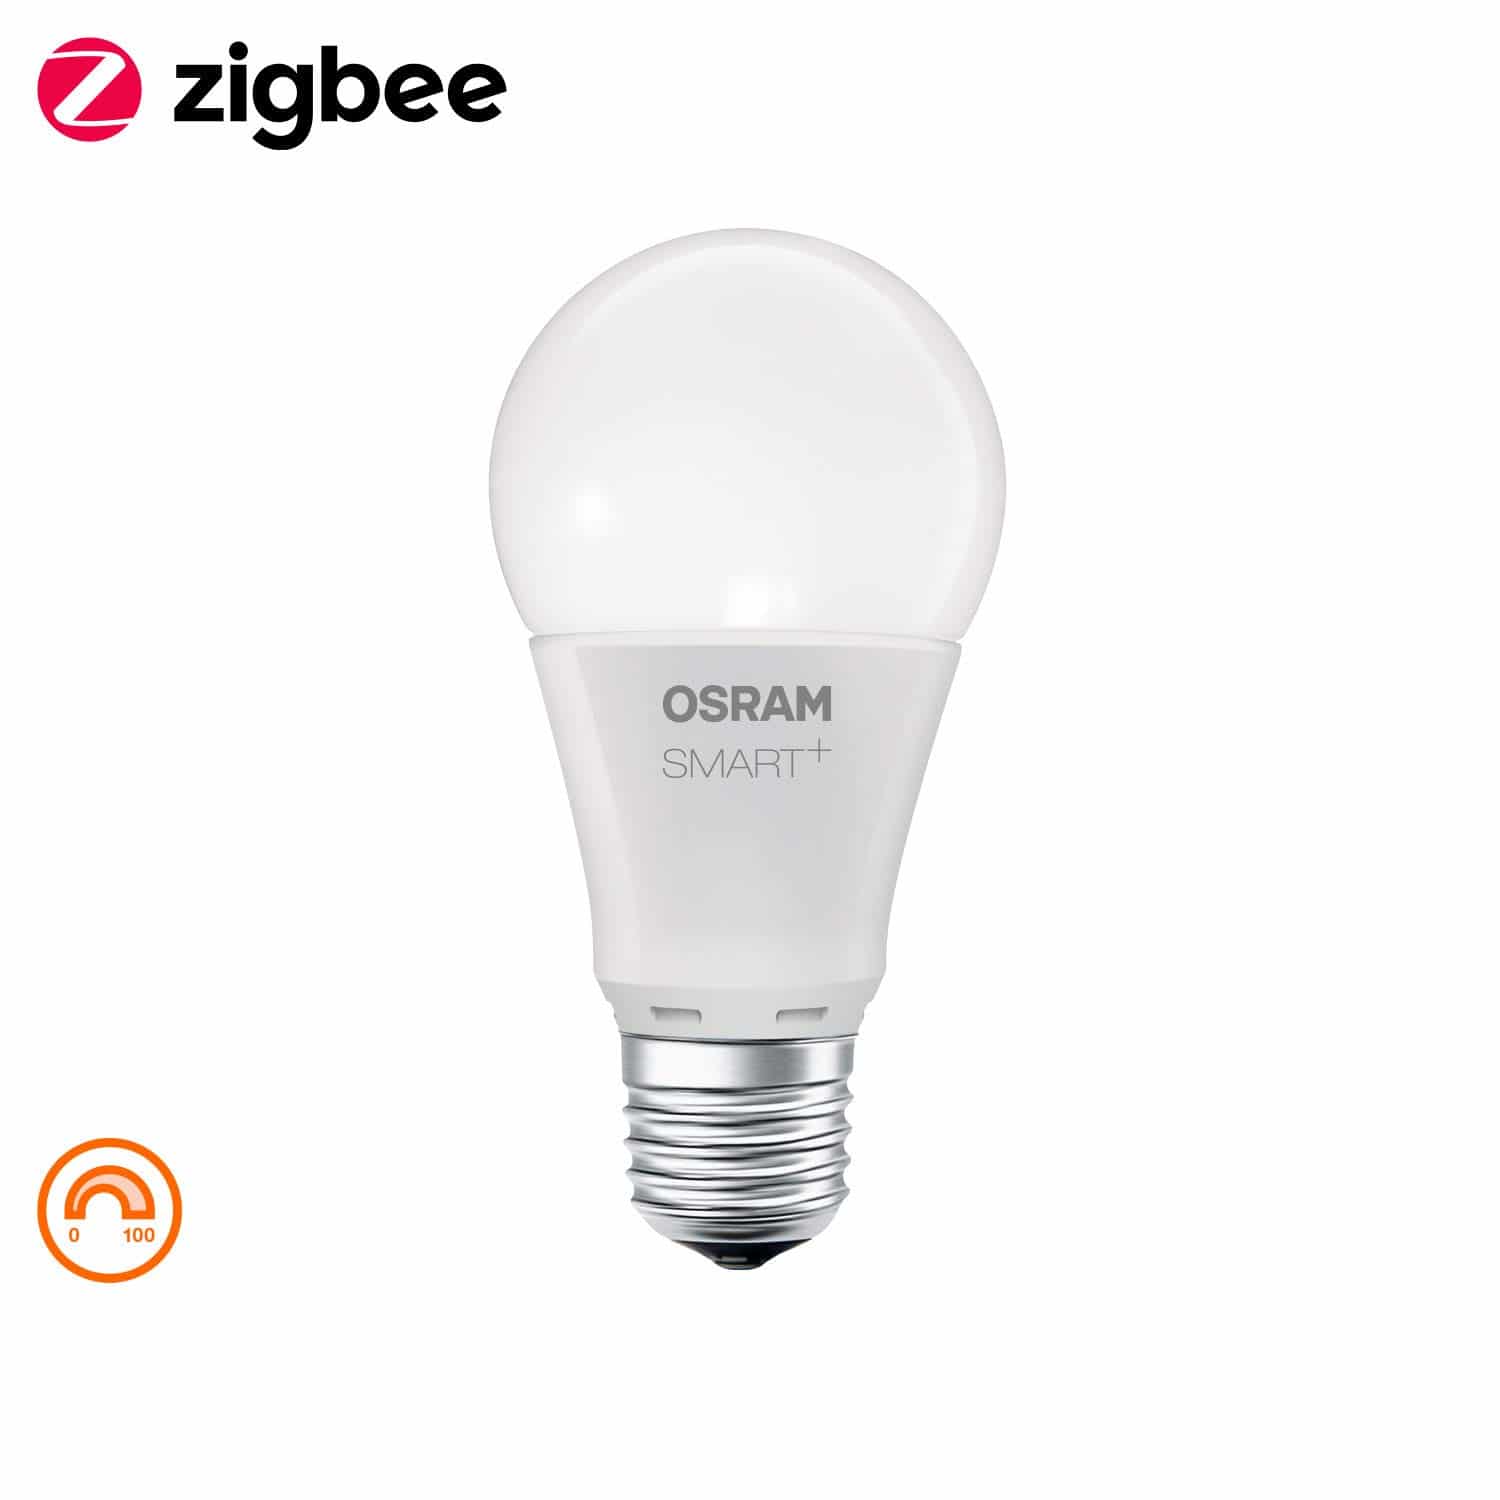 OSRAM Smart+ Ampoule LED Connectée Forme Standard Dimmable Culot B22 équivalent 60W 16 Millions de couleurs 10W | Bluetooth Compatible Siri sur Apple & Alexa sur Android 